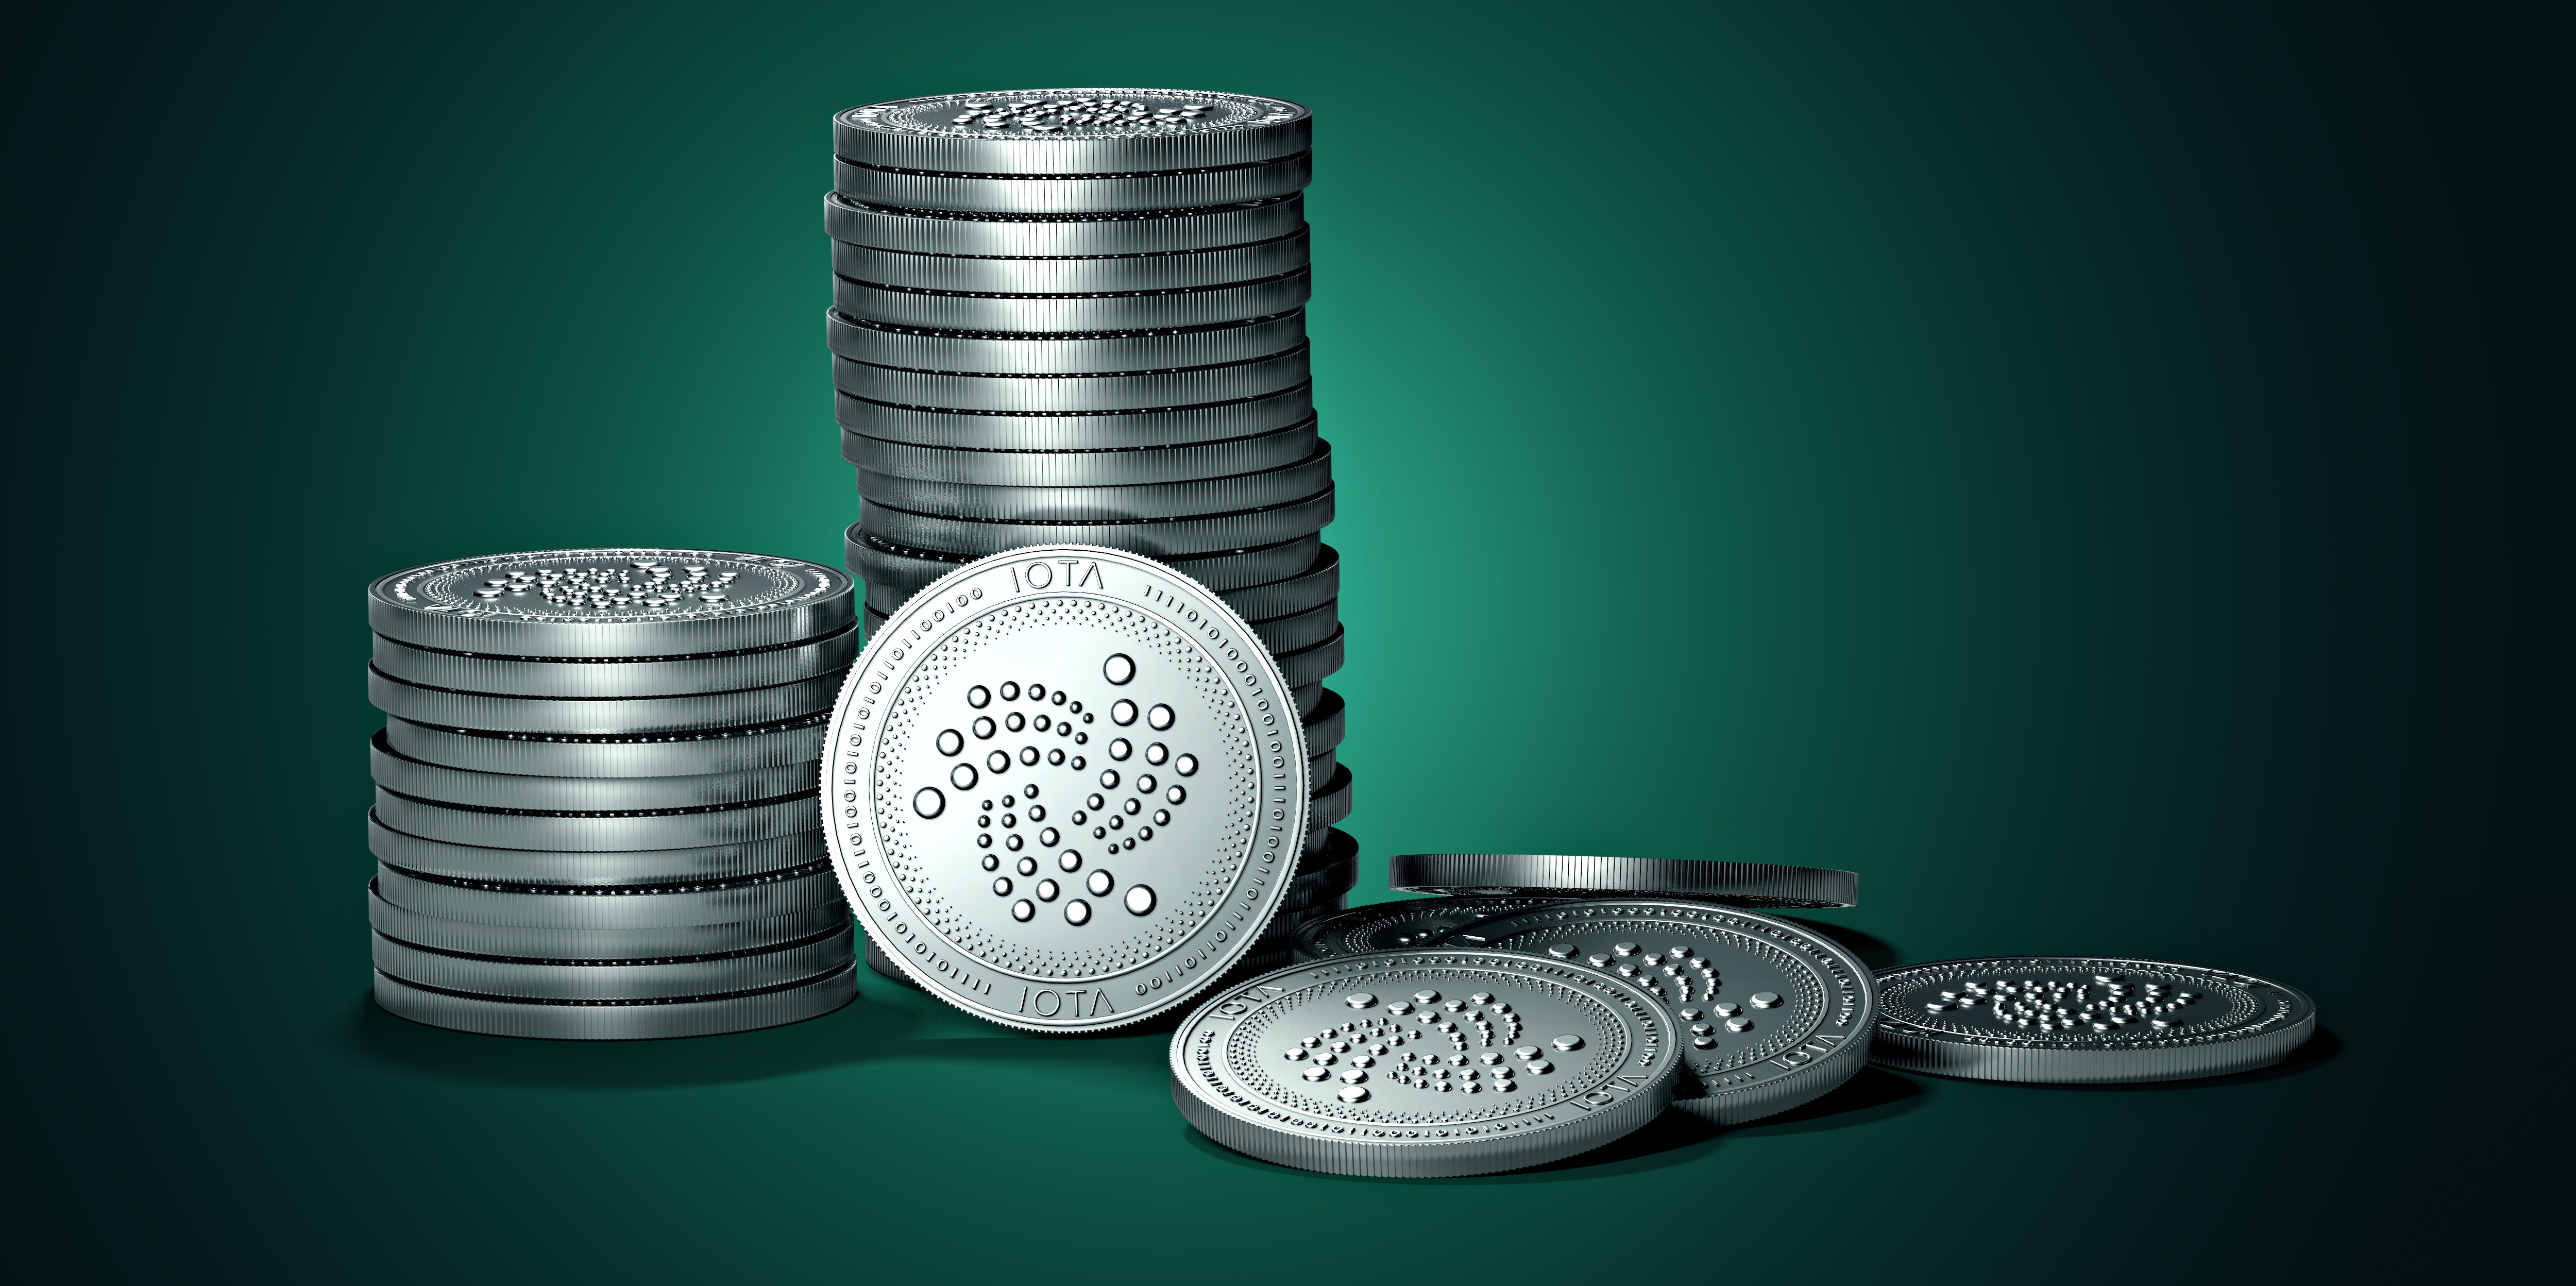 Zastaki.com - Монеты IOTA на зеленом фоне